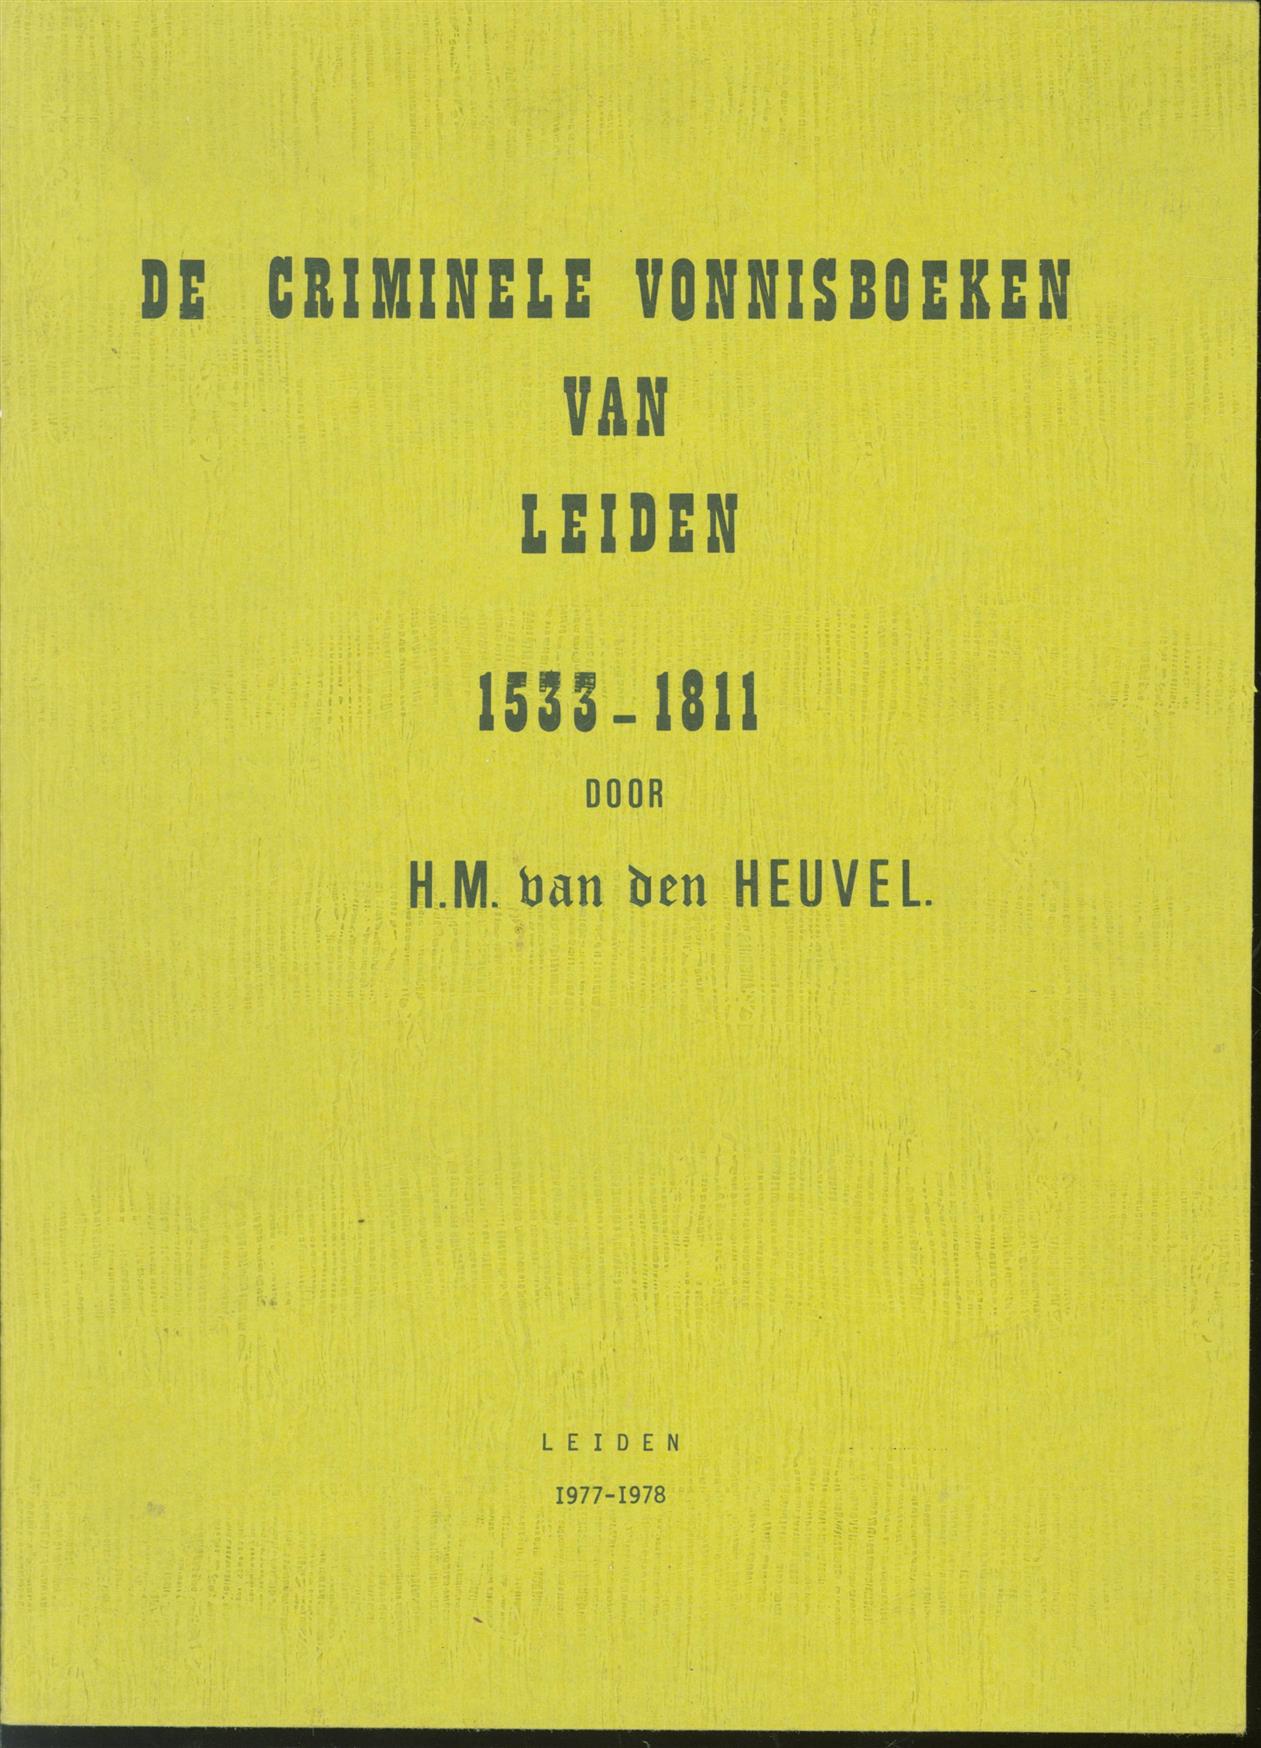 Heuvel, H. M. van den. - Criminele vonnisboeken van Leiden, 1533-1811